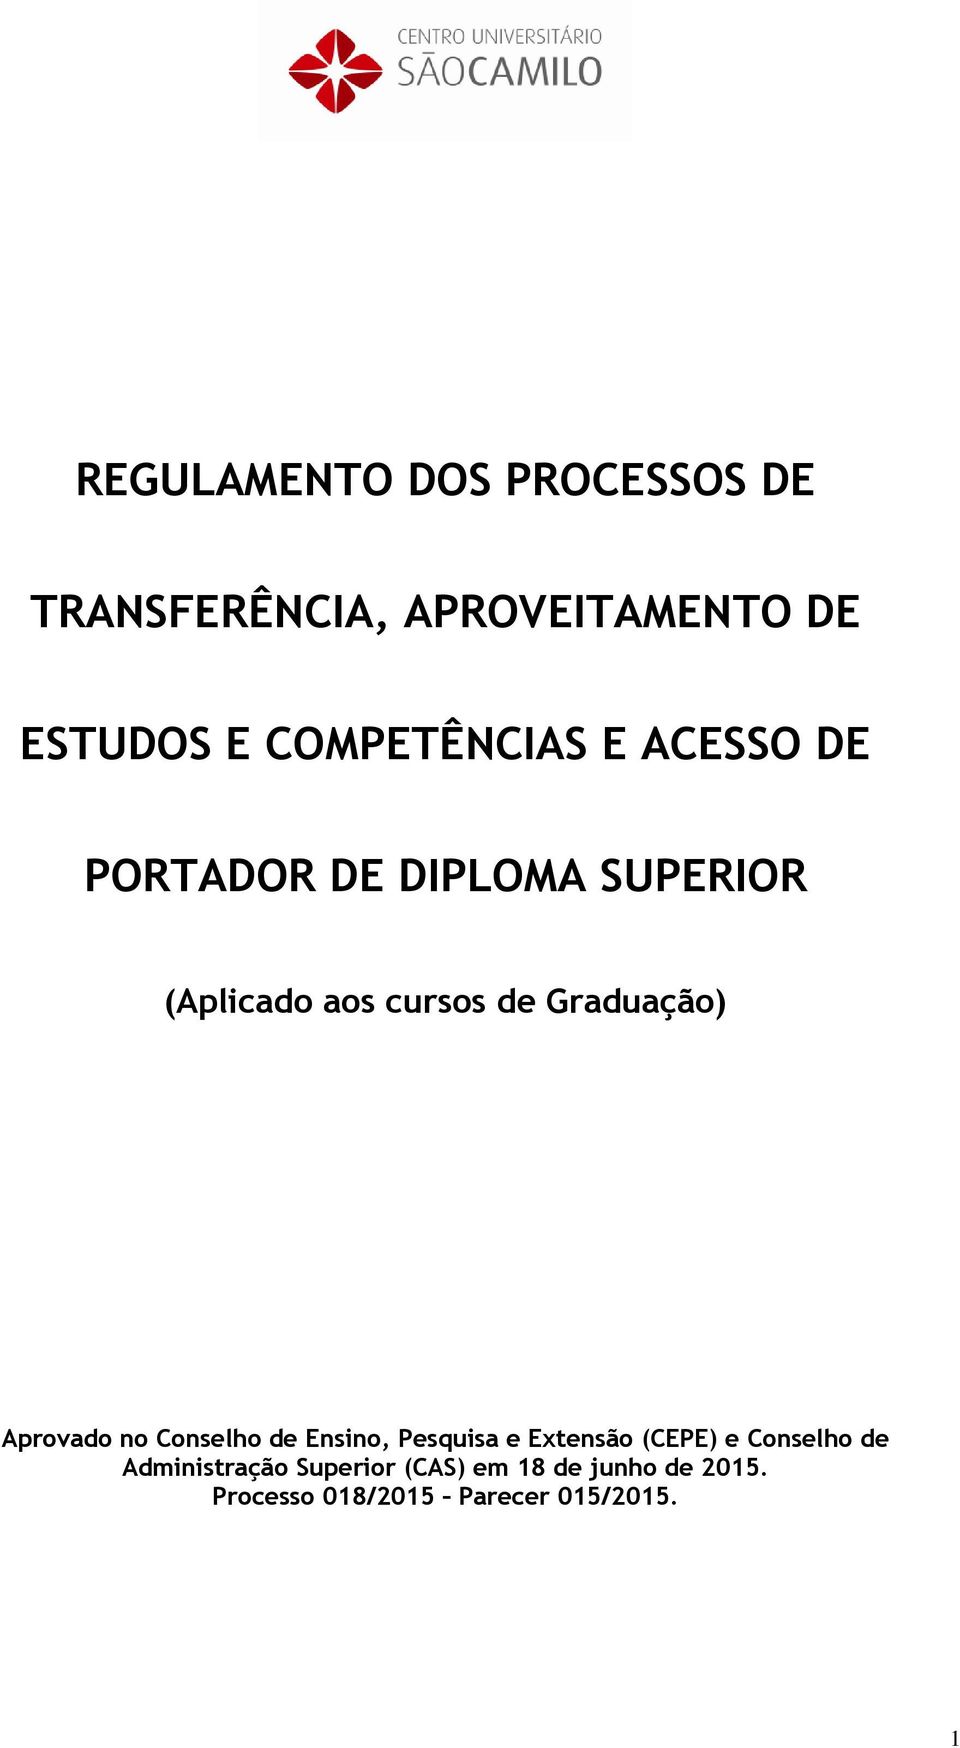 Graduação) Aprovado no Conselho de Ensino, Pesquisa e Extensão (CEPE) e Conselho